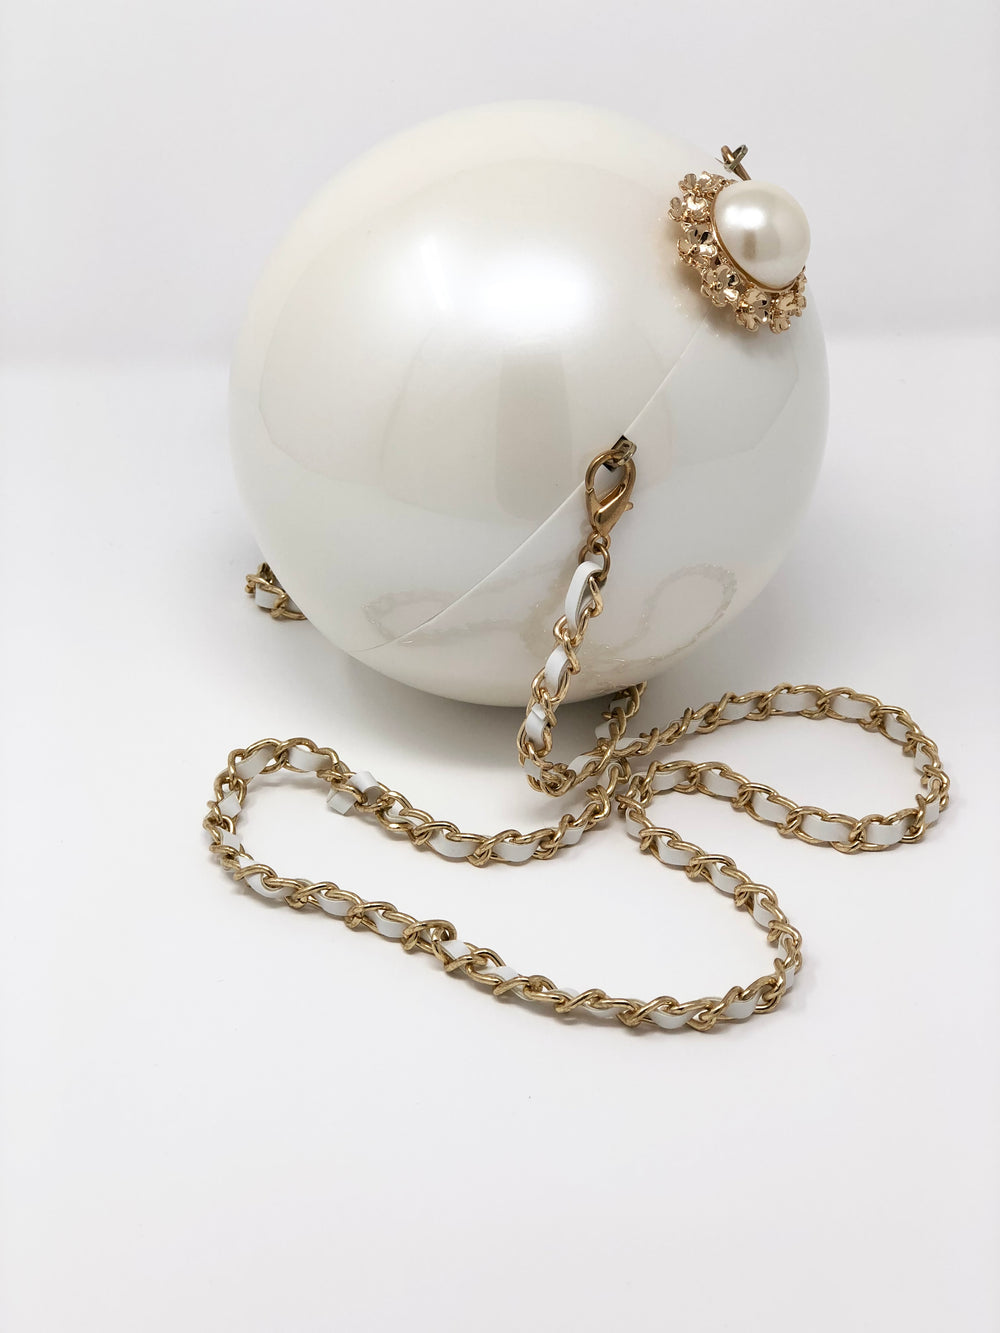 Chanel Pearl Bracelet